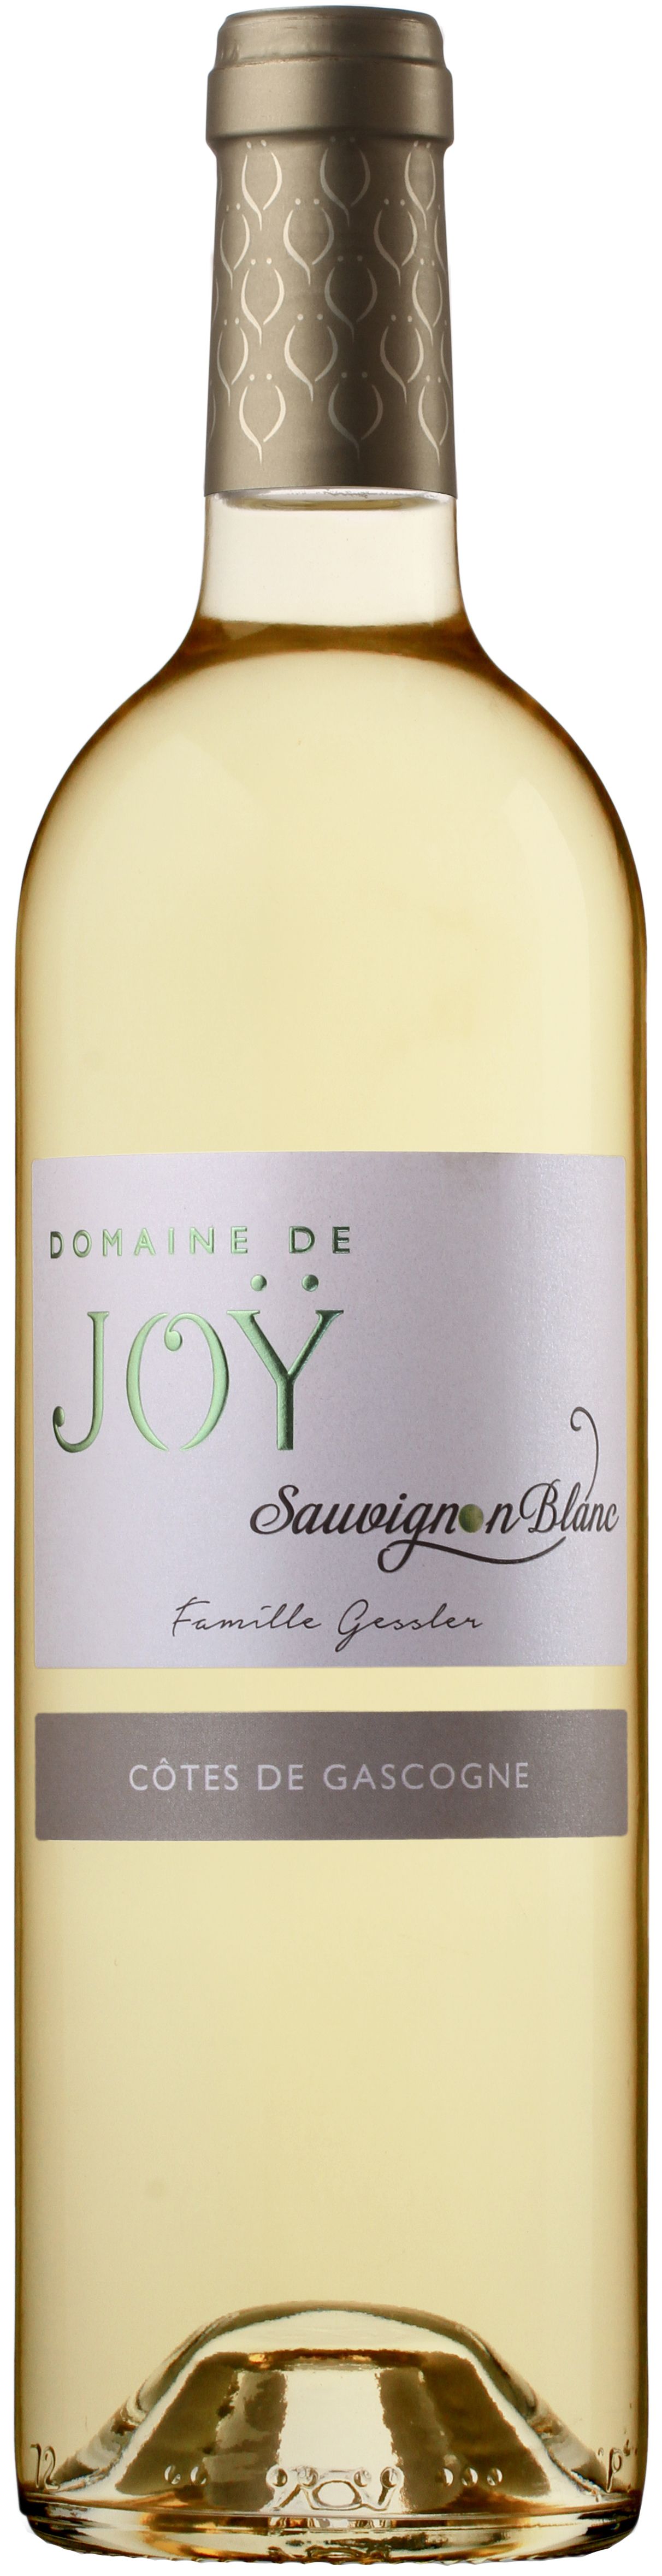 Domaine De Joy, Sauvignon Blanc, 2017